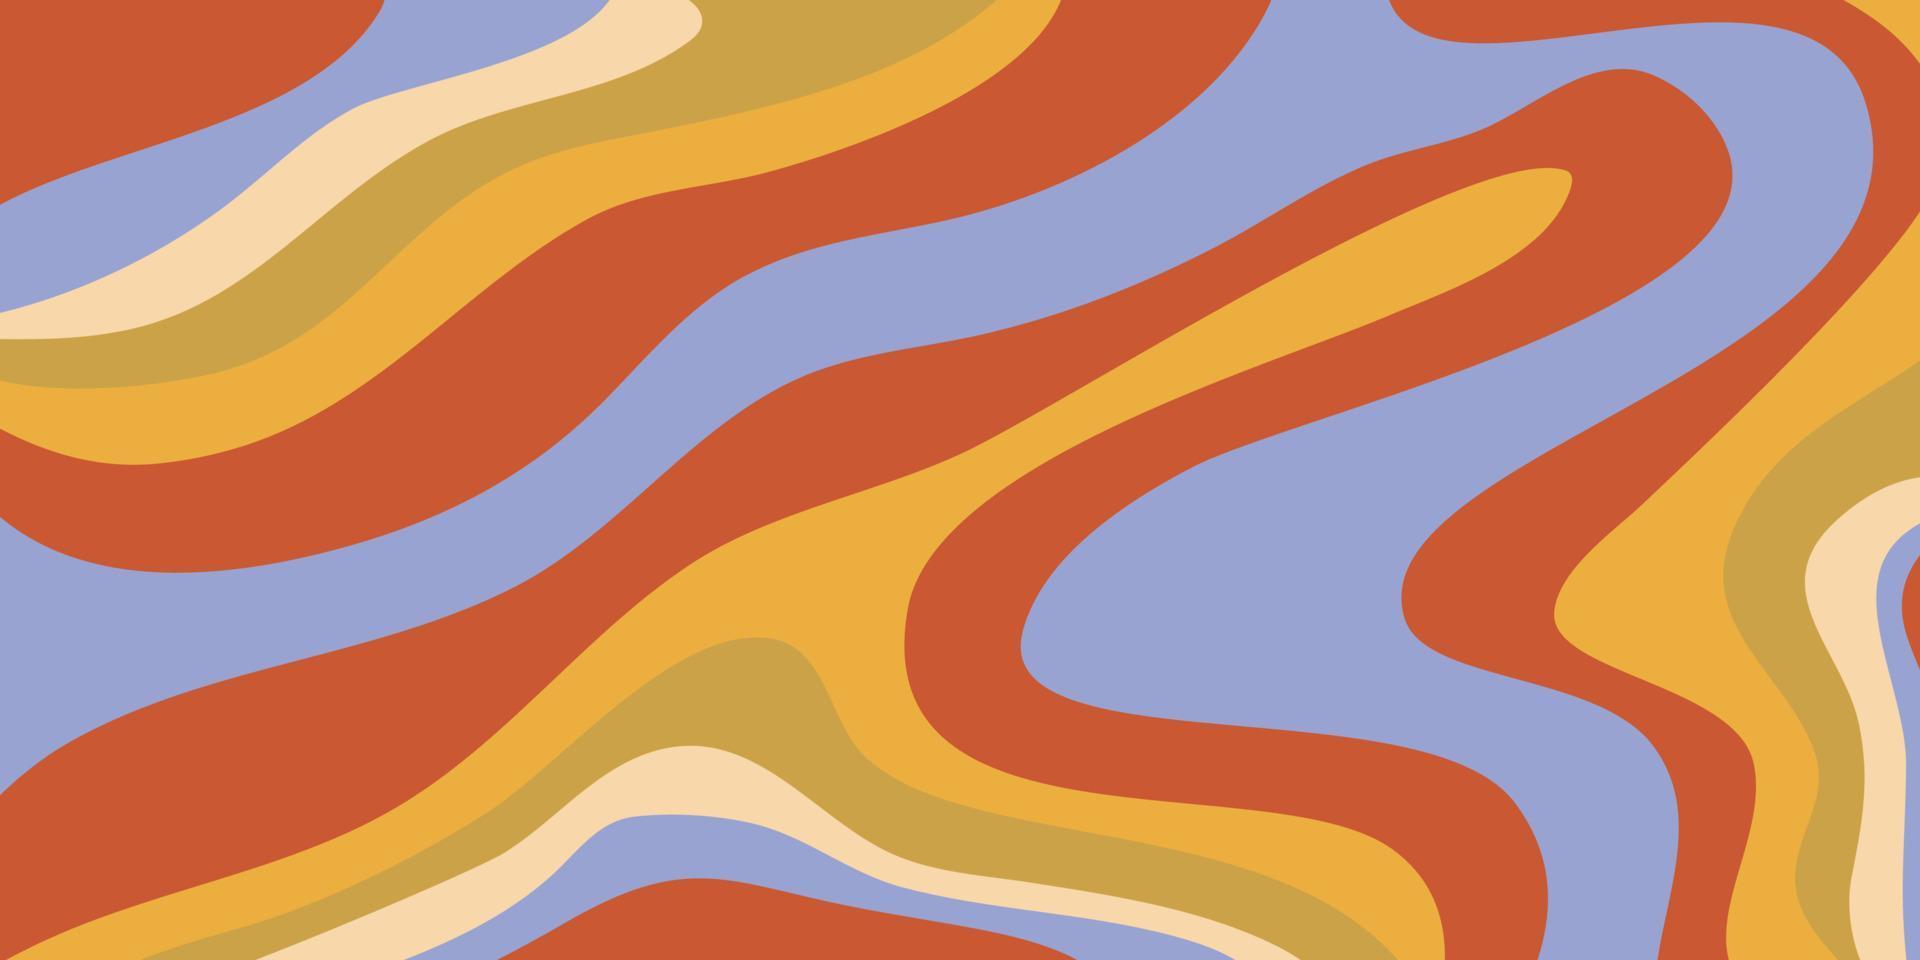 psychedelisch swirl groovy patroon. psychedelisch retro golfbehang. vloeibare groovy achtergrond. vector ontwerp illustratie